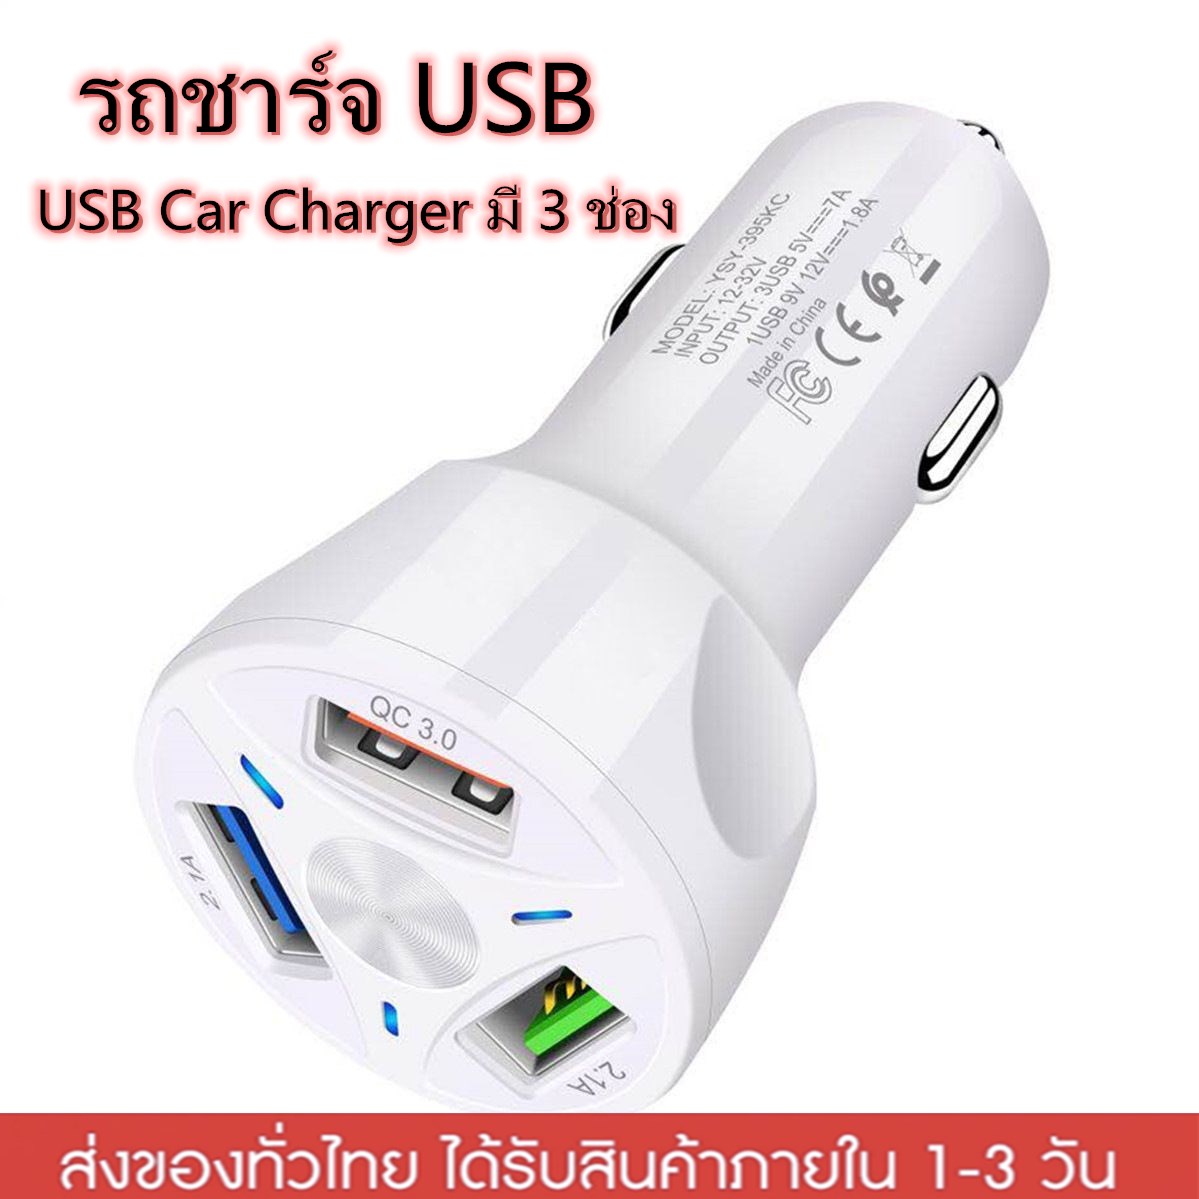 รถชาร์จ USB ค่าเร็ว QC 3.0 สากล ชาร์จไฟในรถได้อย่างรวดเร็ว 3 พอร์ตสำหรับชาร์จโทรศัพท์มือถือ USB Car Charger 3 ช่อง